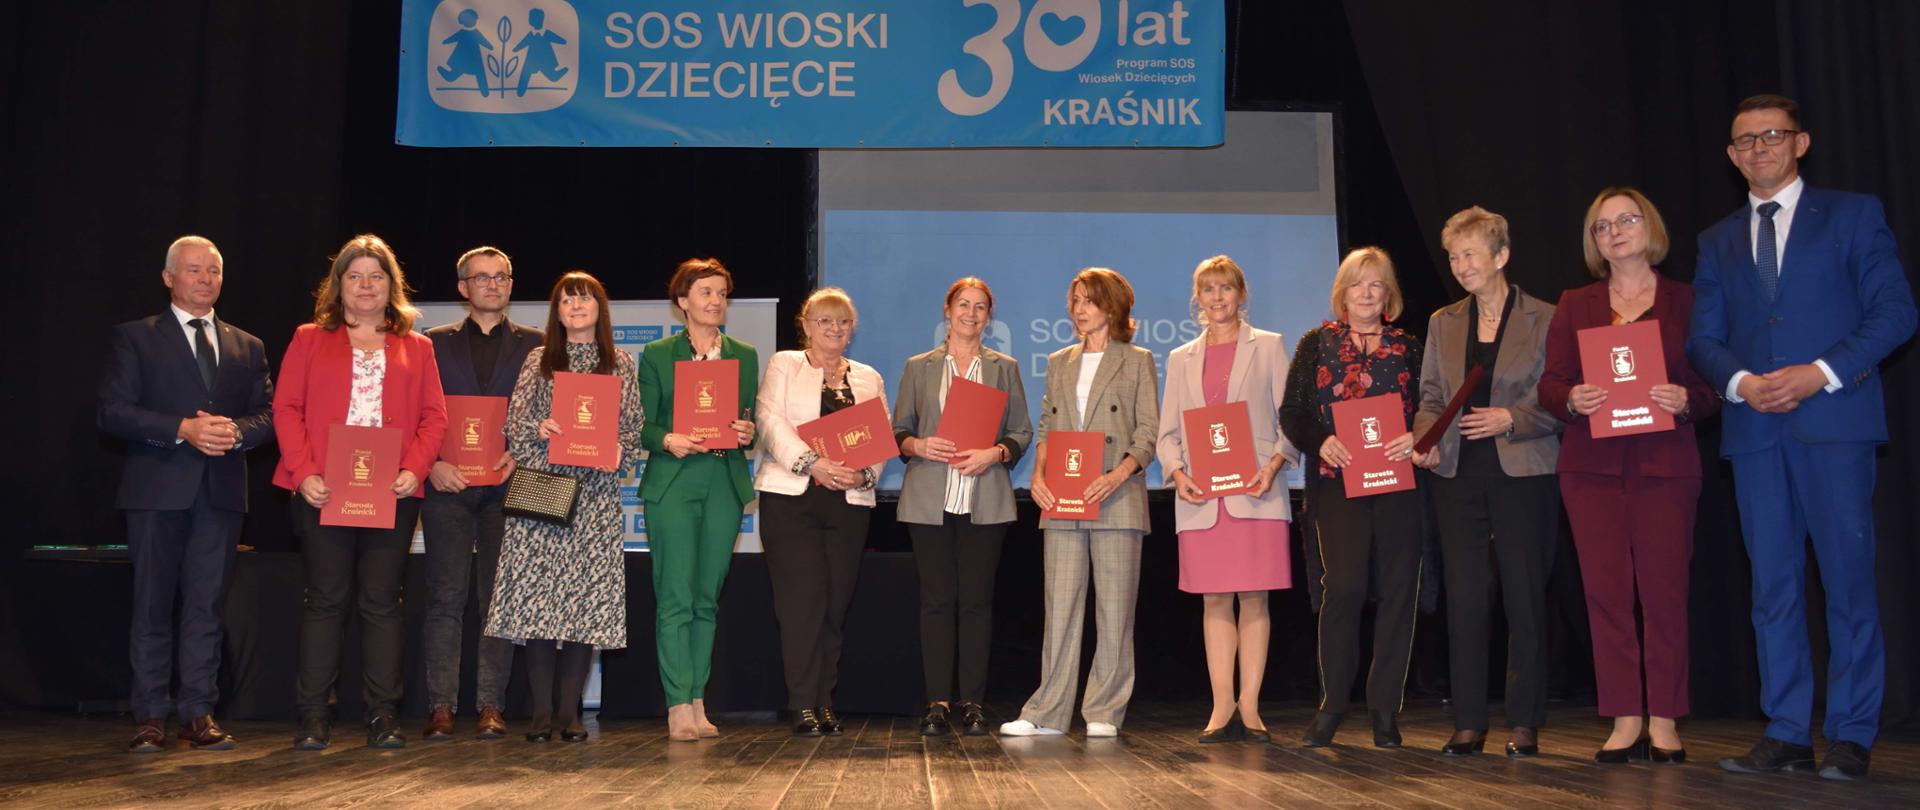 Jubileusz 30-lecia SOS Wioski Dziecięcej w Kraśniku